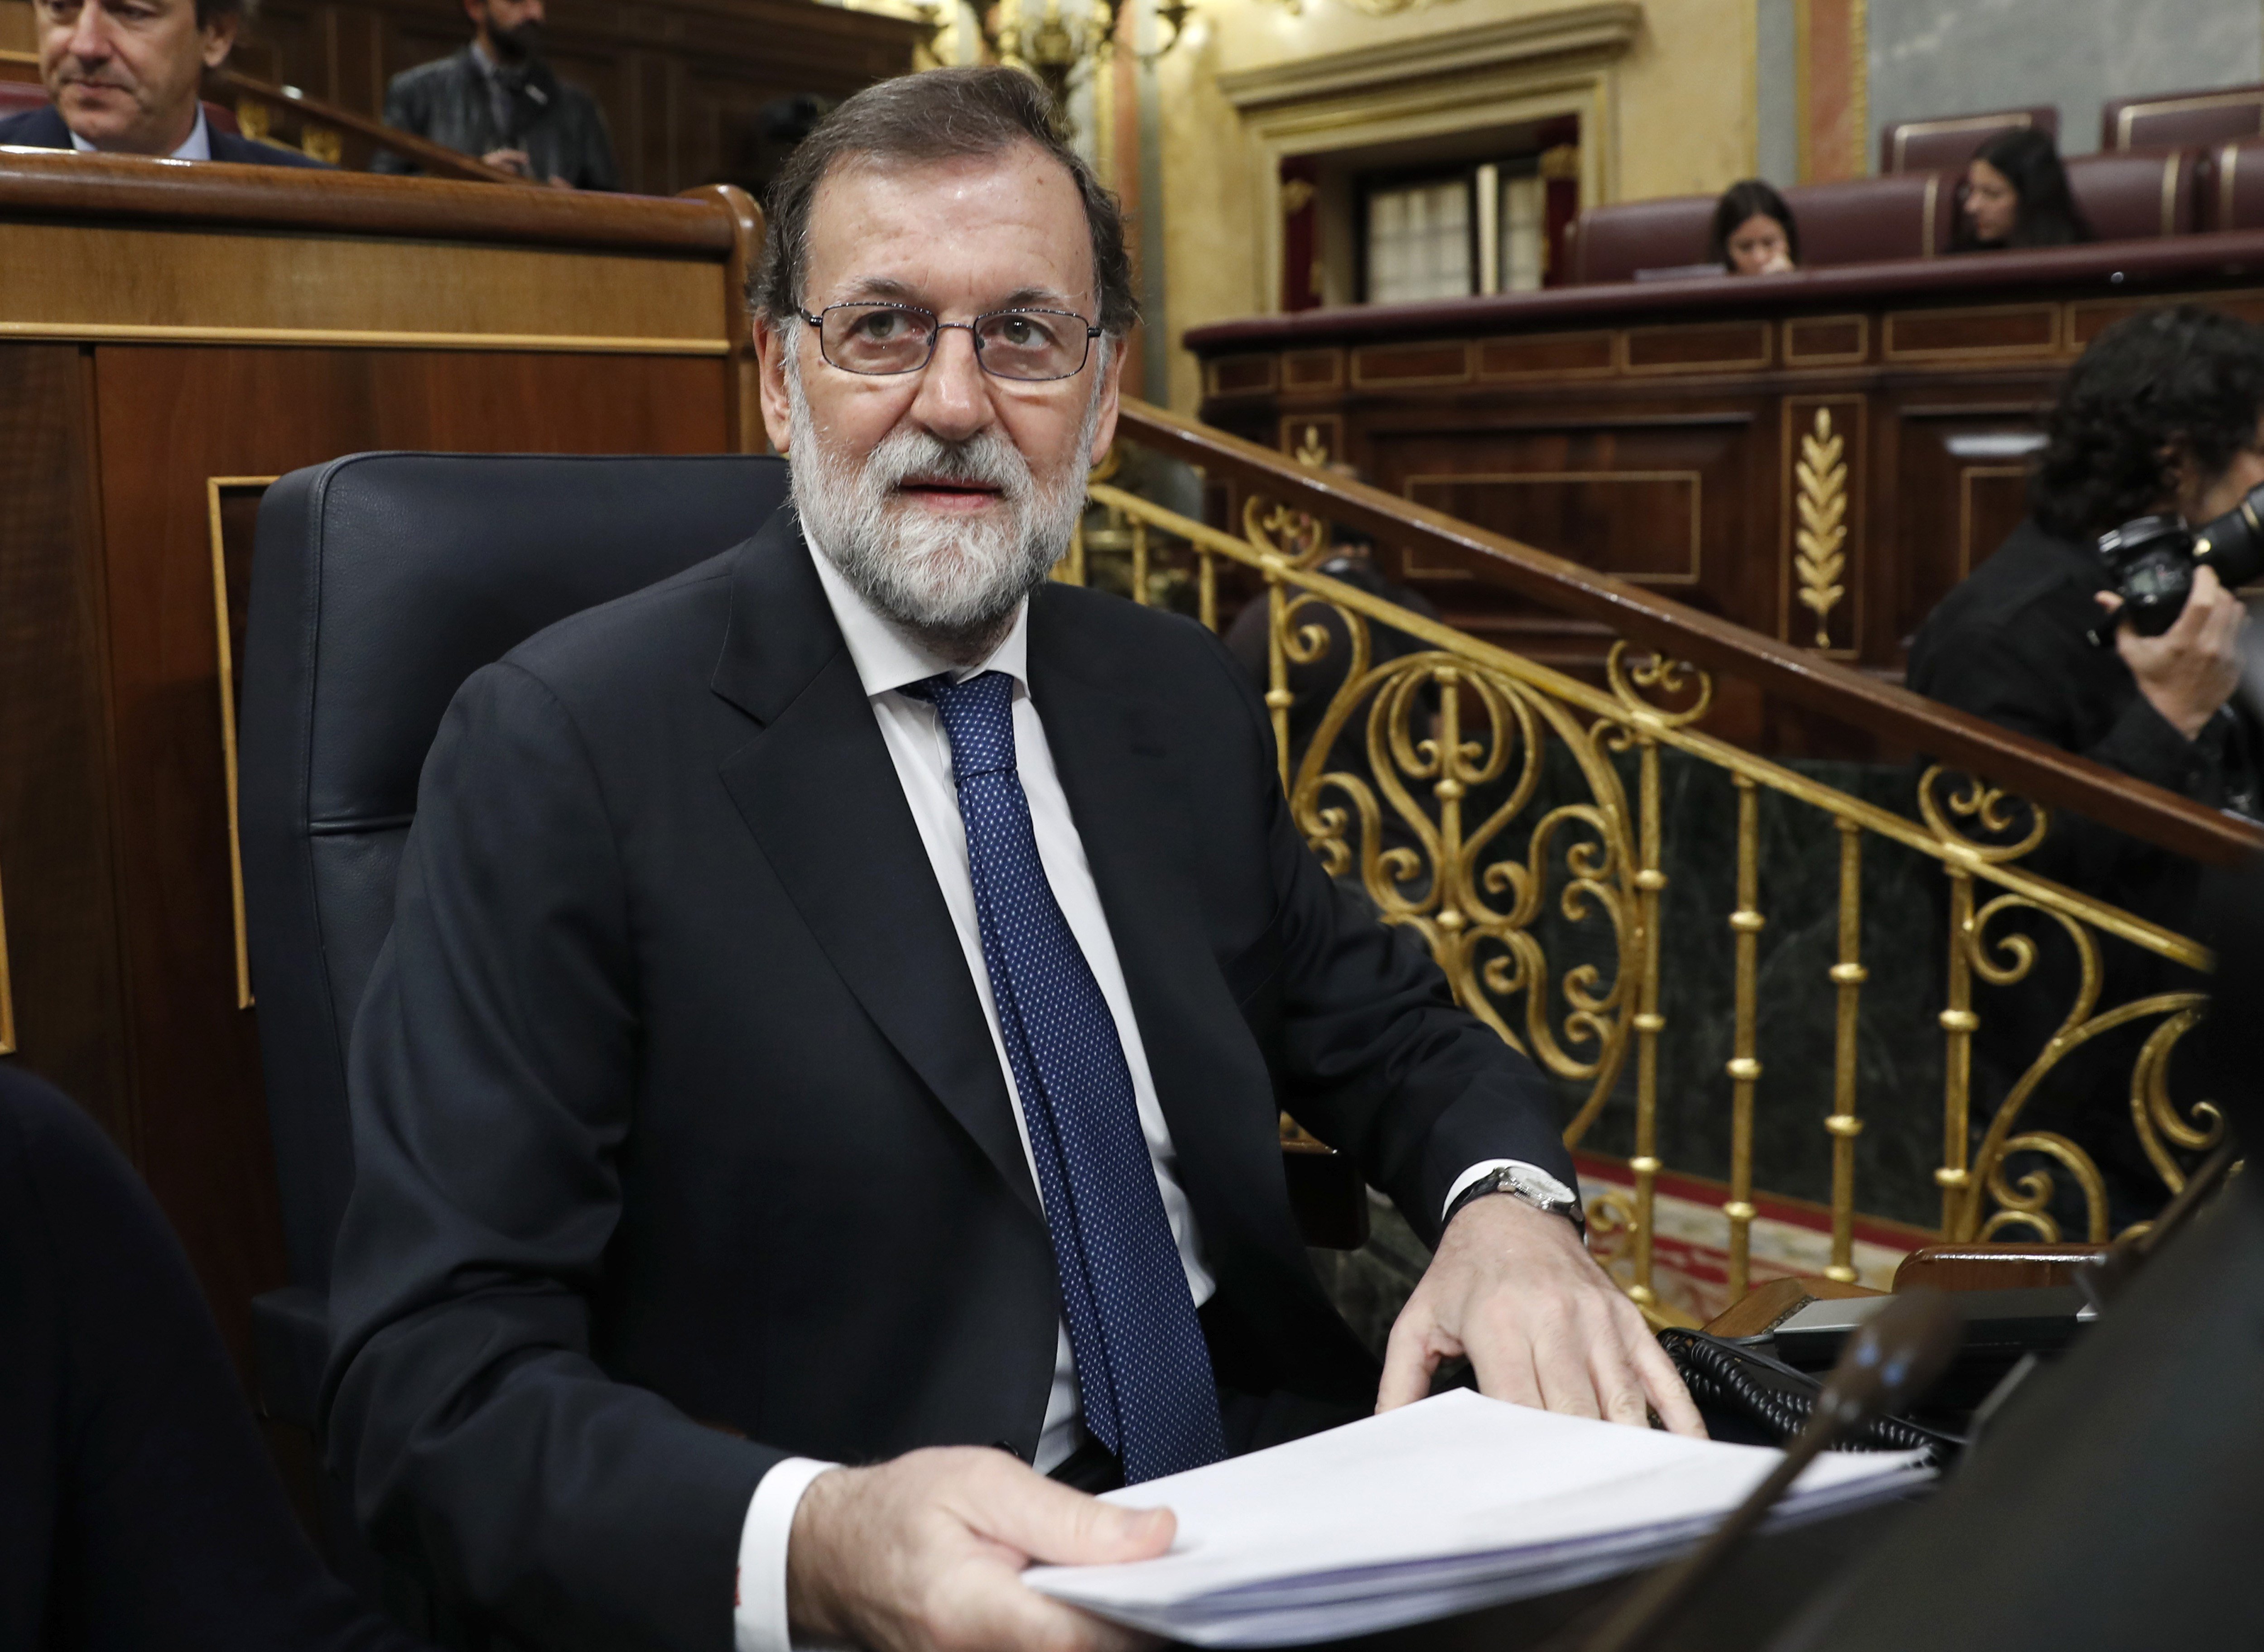 ¿Crees que Rajoy ha restablecido el orden democrático?